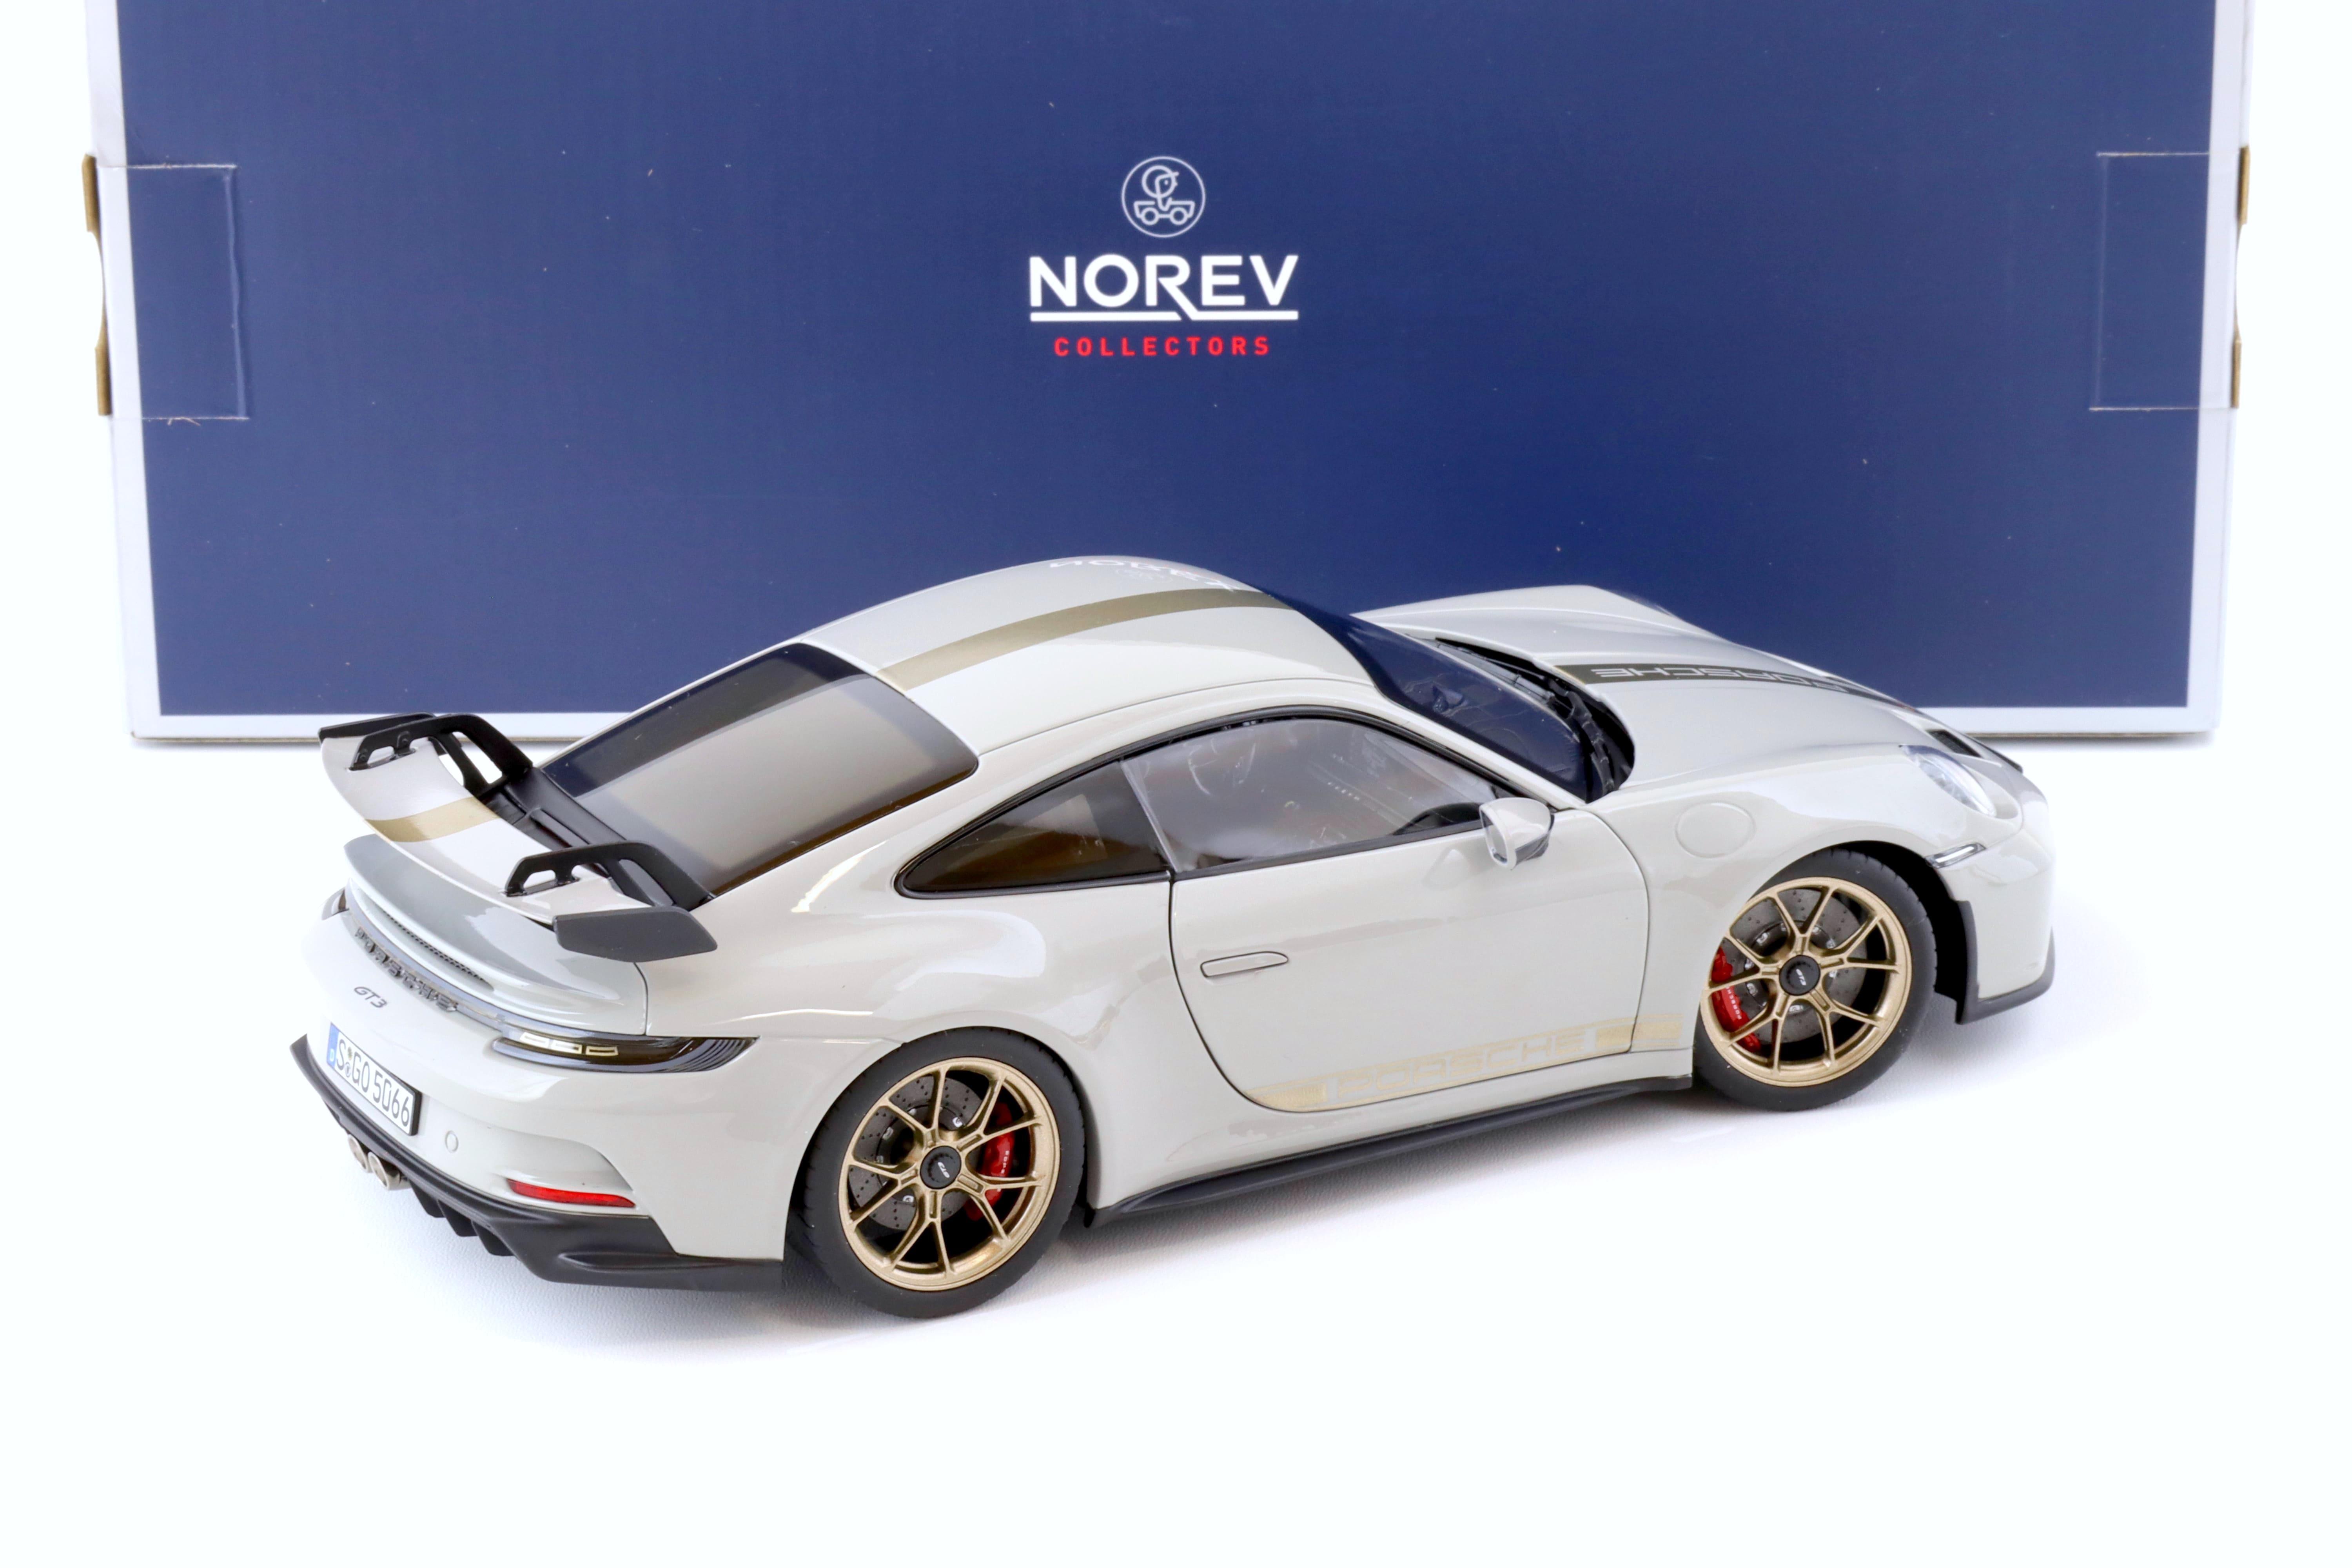 1:18 Norev Porsche 911 (992) GT3 Coupe Kreide 2021 - Limited 504 pcs.